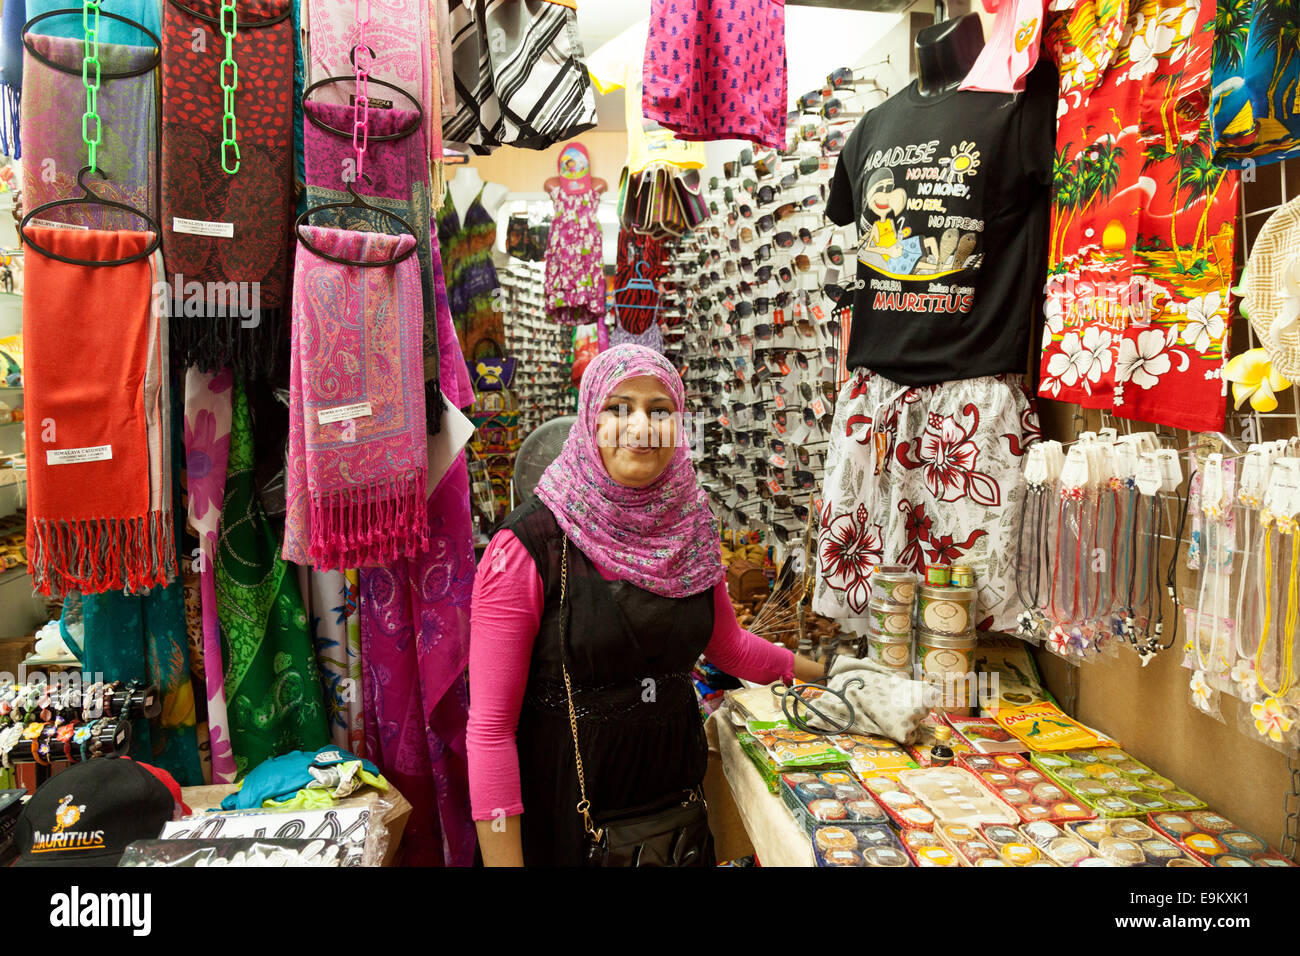 Arabo musulmano stallholder donna e i suoi vestiti in stallo il mercato coperto, Port Louis, Maurizio Foto Stock